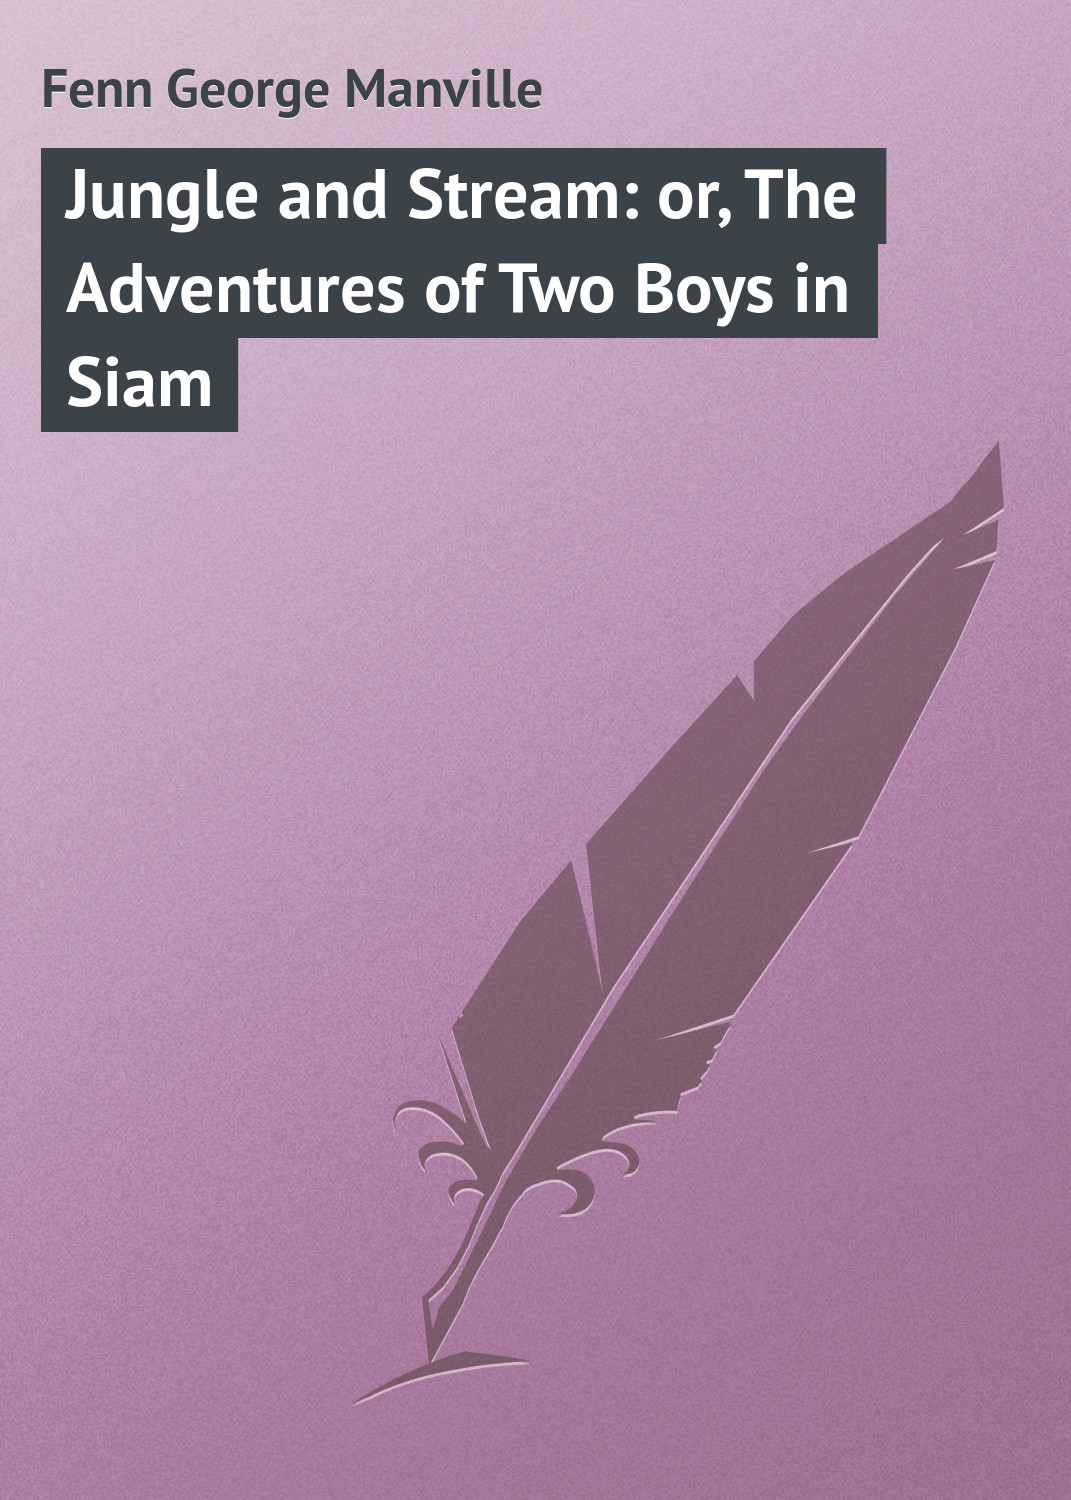 Книга Jungle and Stream: or, The Adventures of Two Boys in Siam из серии , созданная George Fenn, может относится к жанру Зарубежная классика, Зарубежные детские книги. Стоимость электронной книги Jungle and Stream: or, The Adventures of Two Boys in Siam с идентификатором 23149459 составляет 5.99 руб.